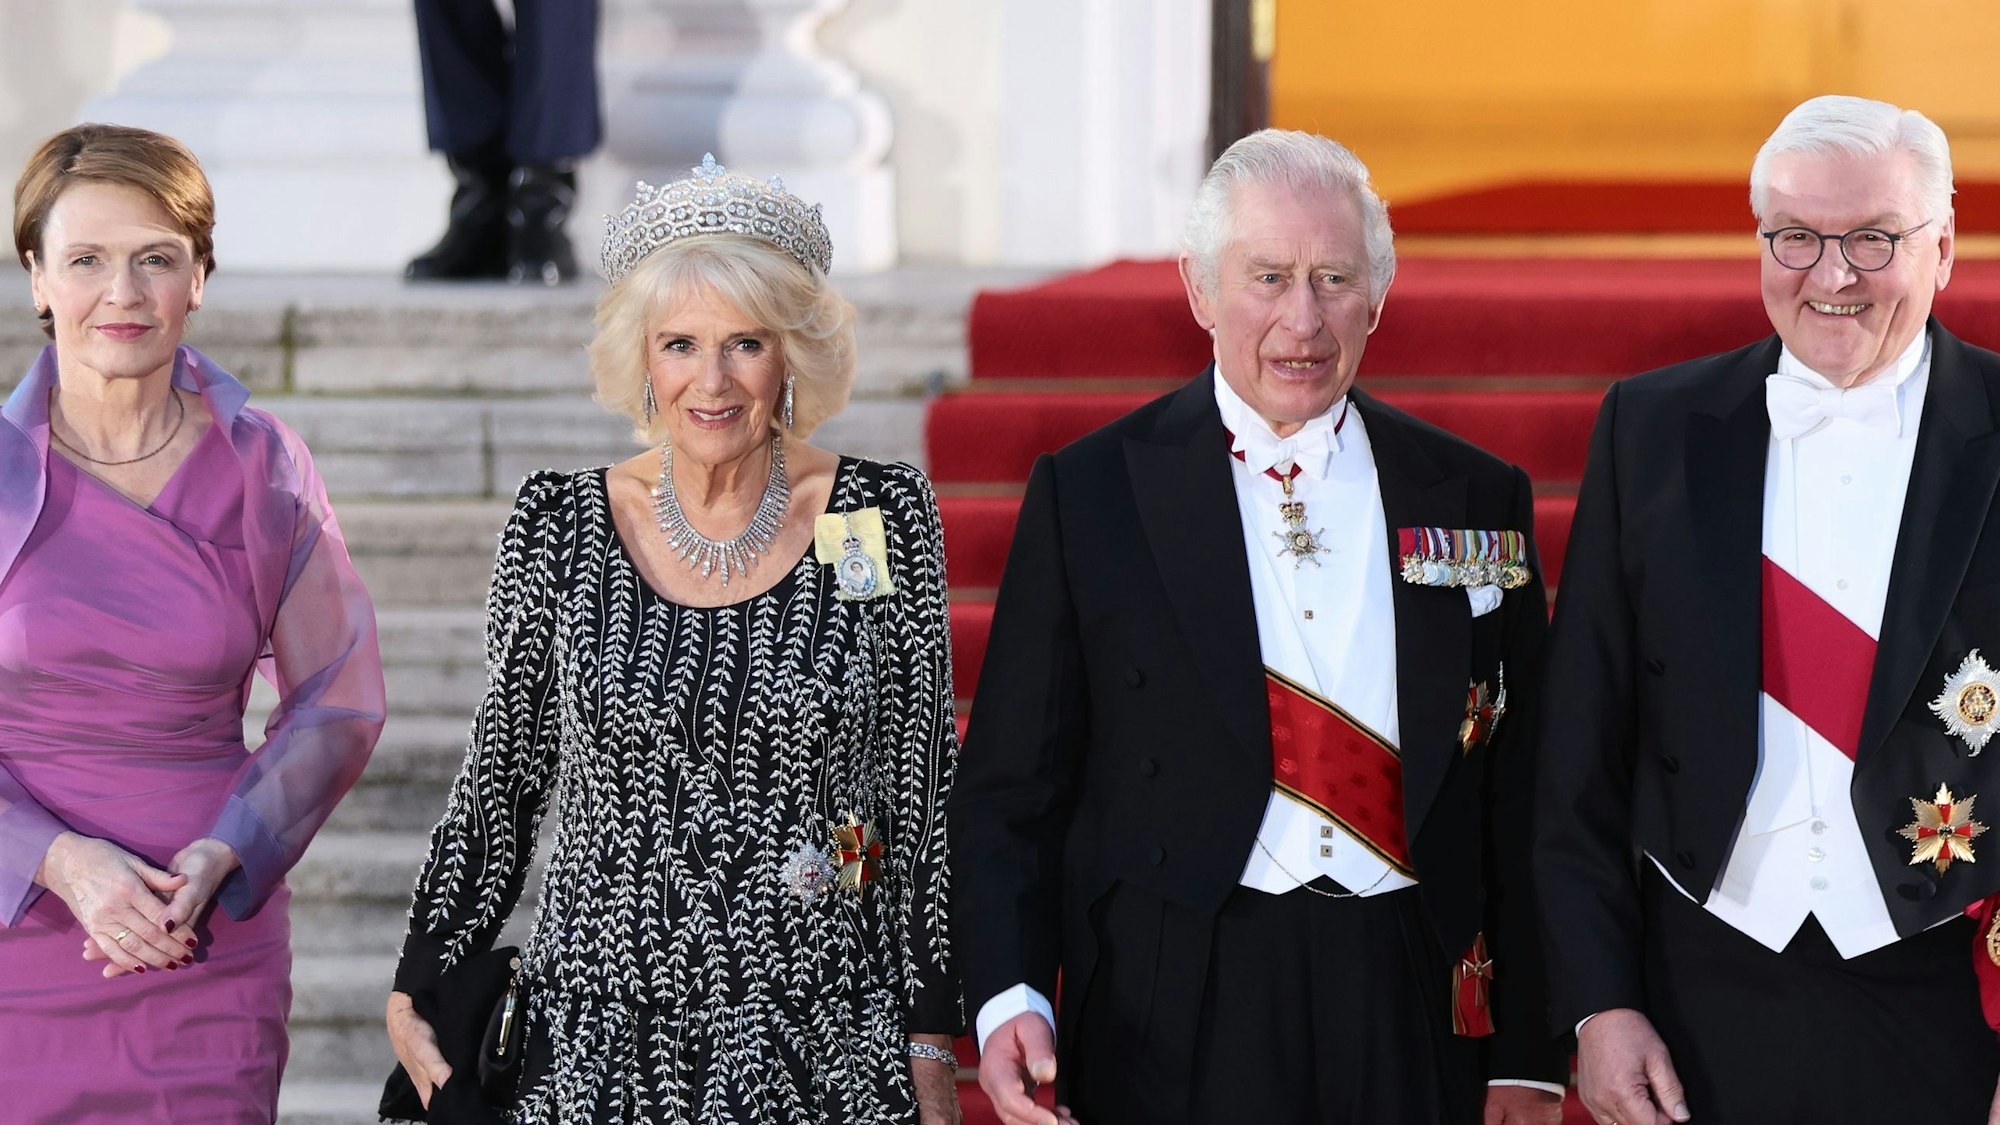 König Charles III. und Königin-Gemahlin Camilla kommen mit Bundespräsident Frank-Walter Steinmeier und seiner Frau Elke Büdenbender die Treppe herunter.